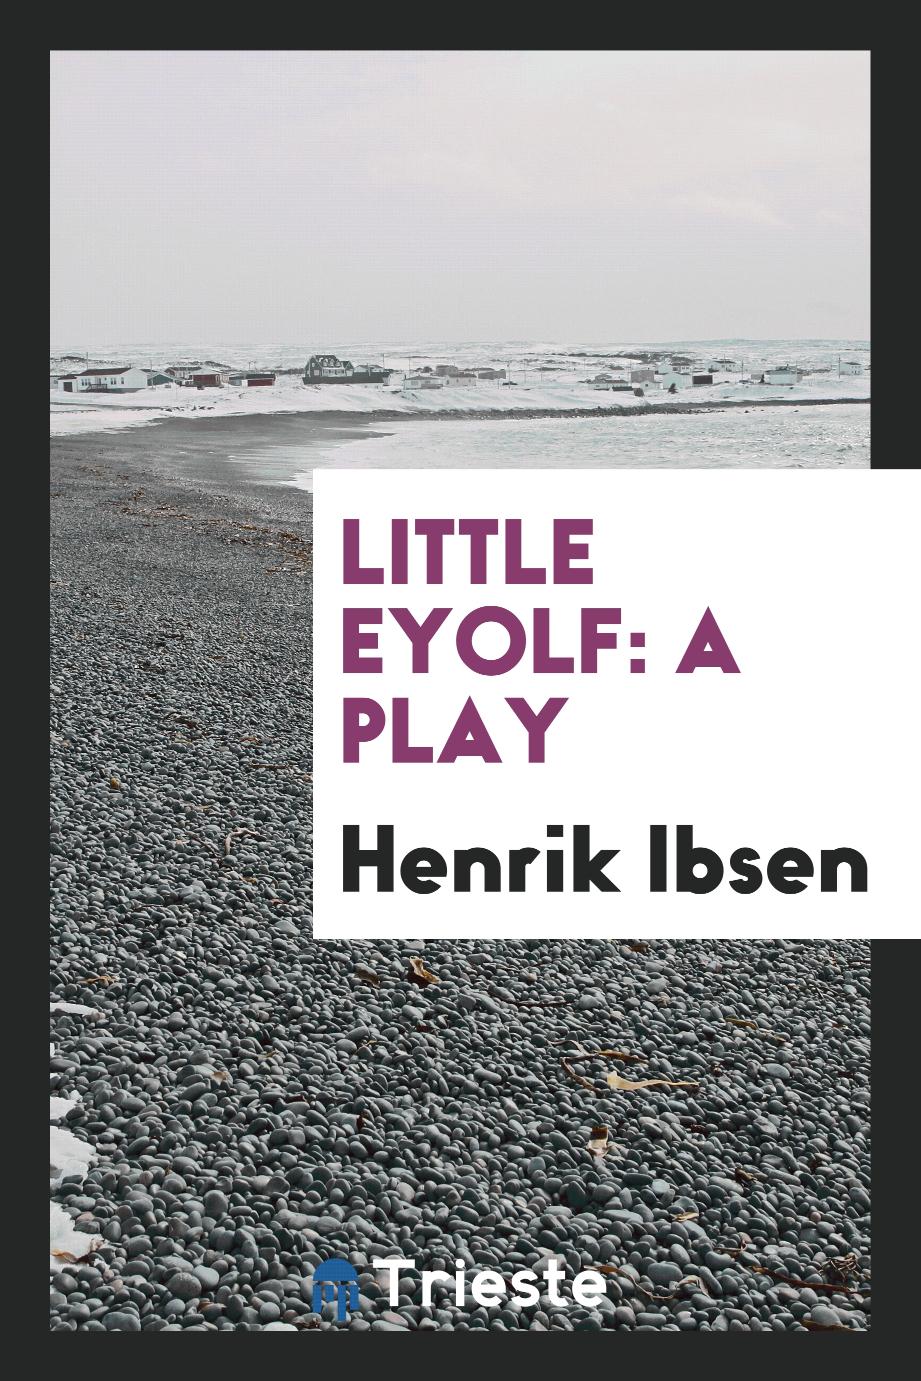 Little Eyolf: a play